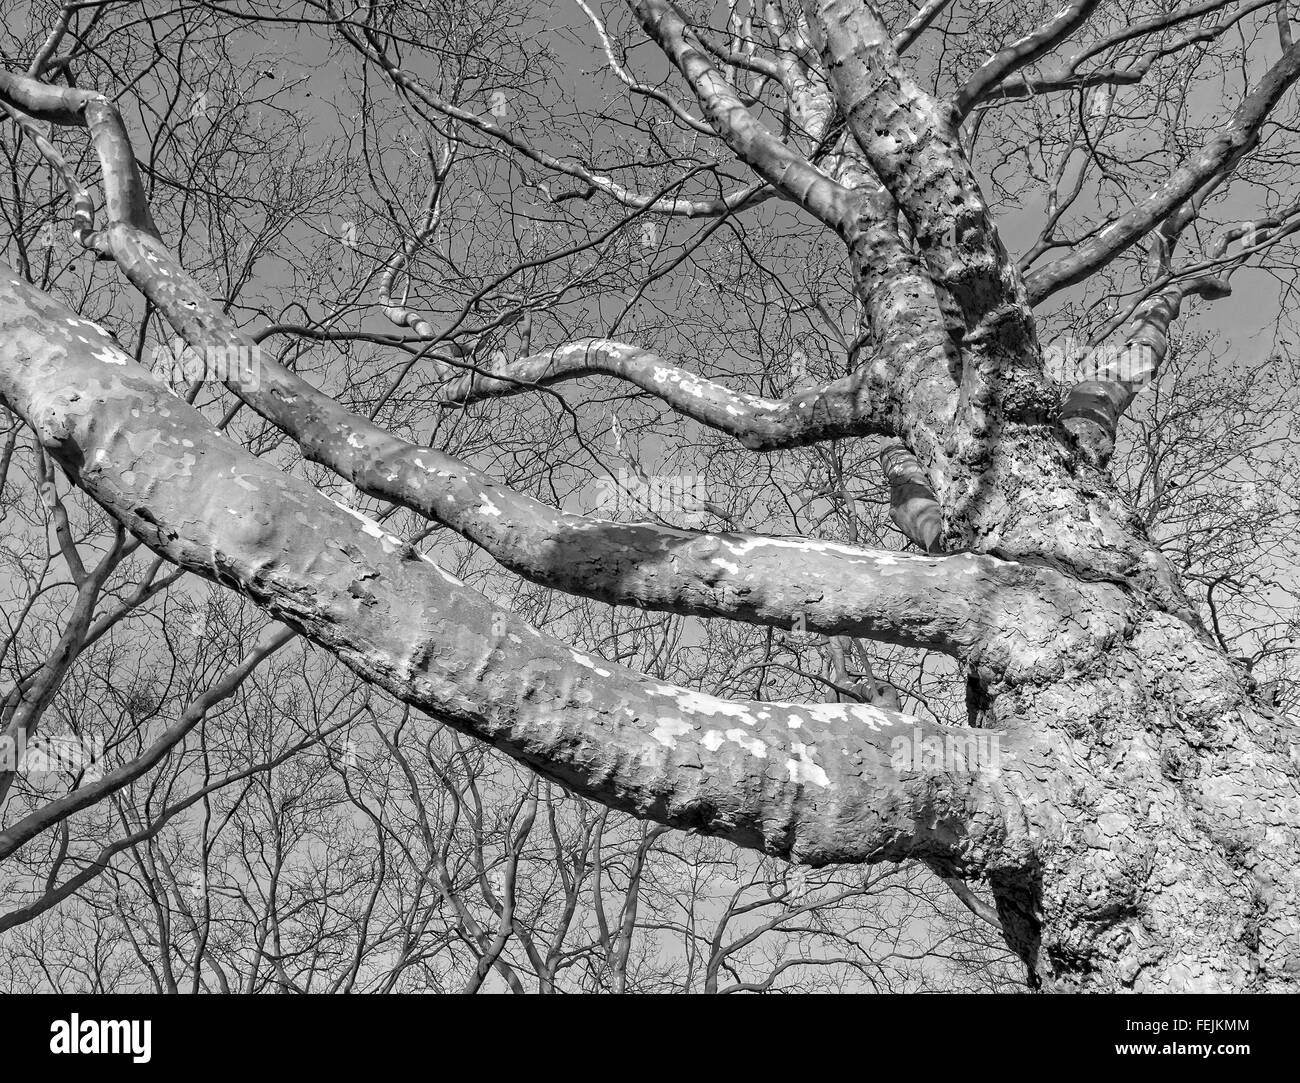 Fotografía en blanco y negro de deshojado avión las ramas de los árboles. Foto de stock